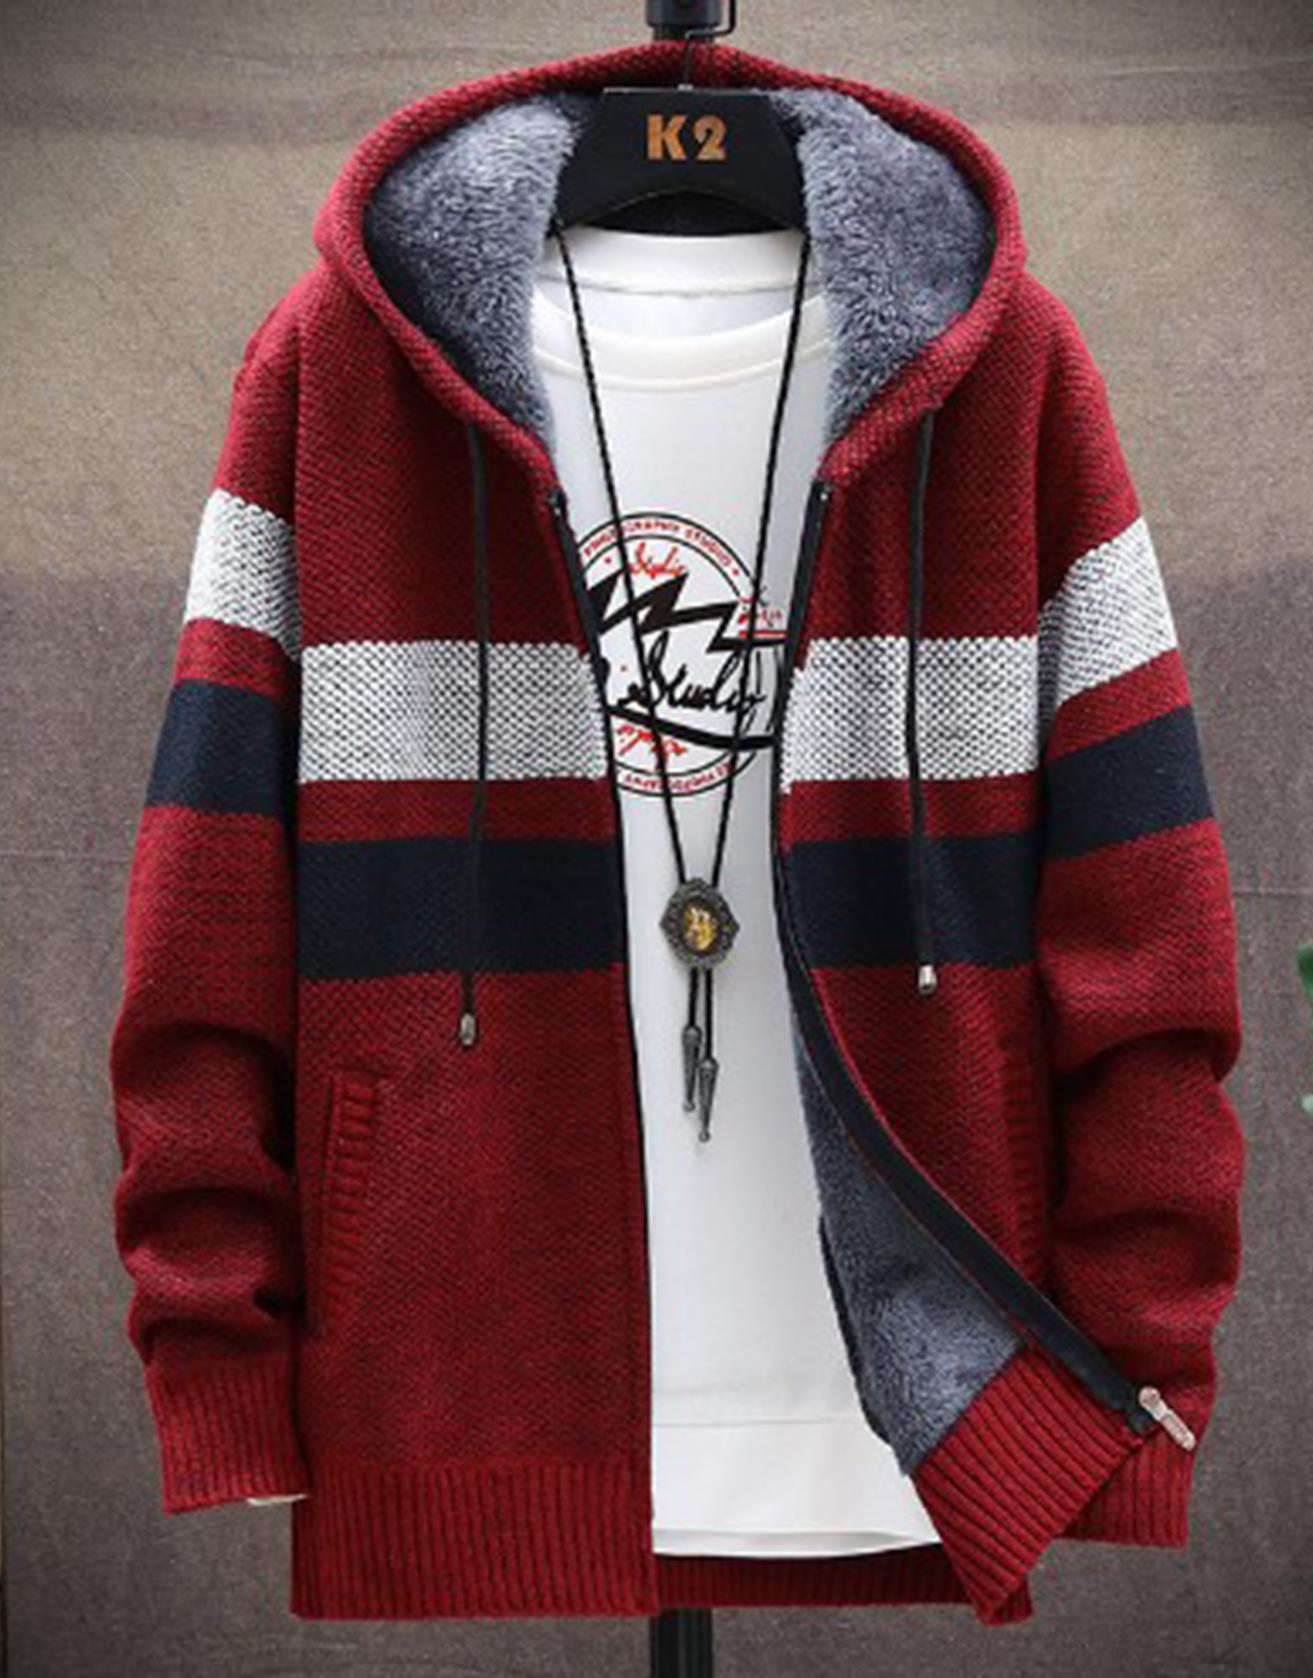 Retro Ethnic Style Knitted Jacket / TECHWEAR CLUB / Techwear